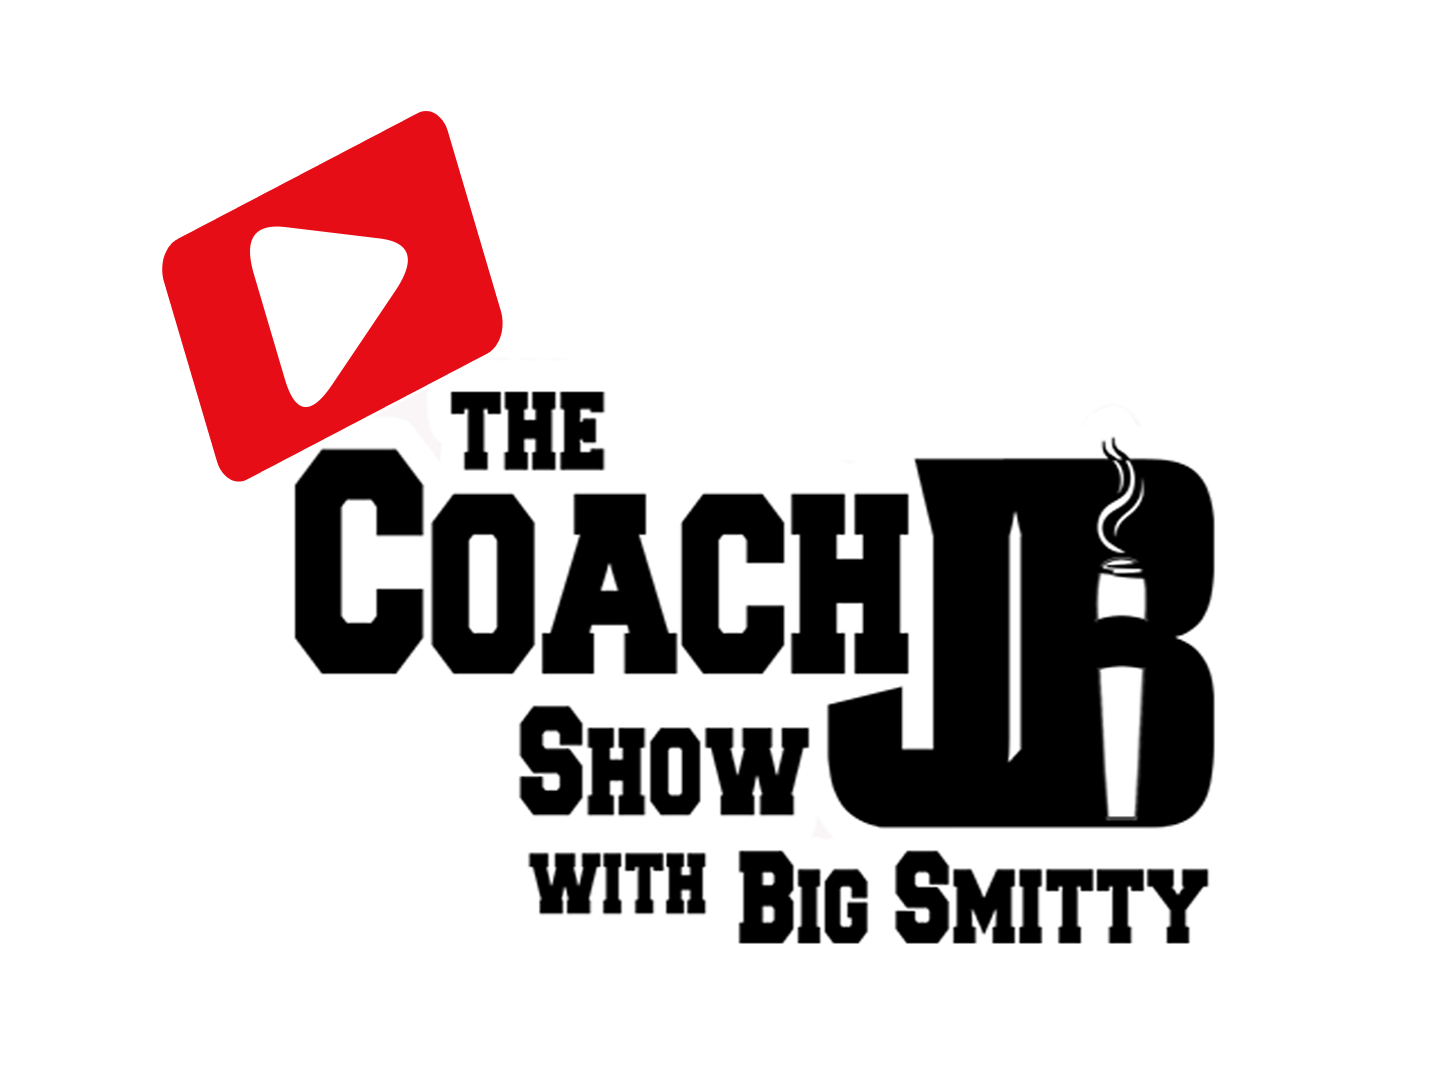 Coach JB Show with Big Smitty Polo